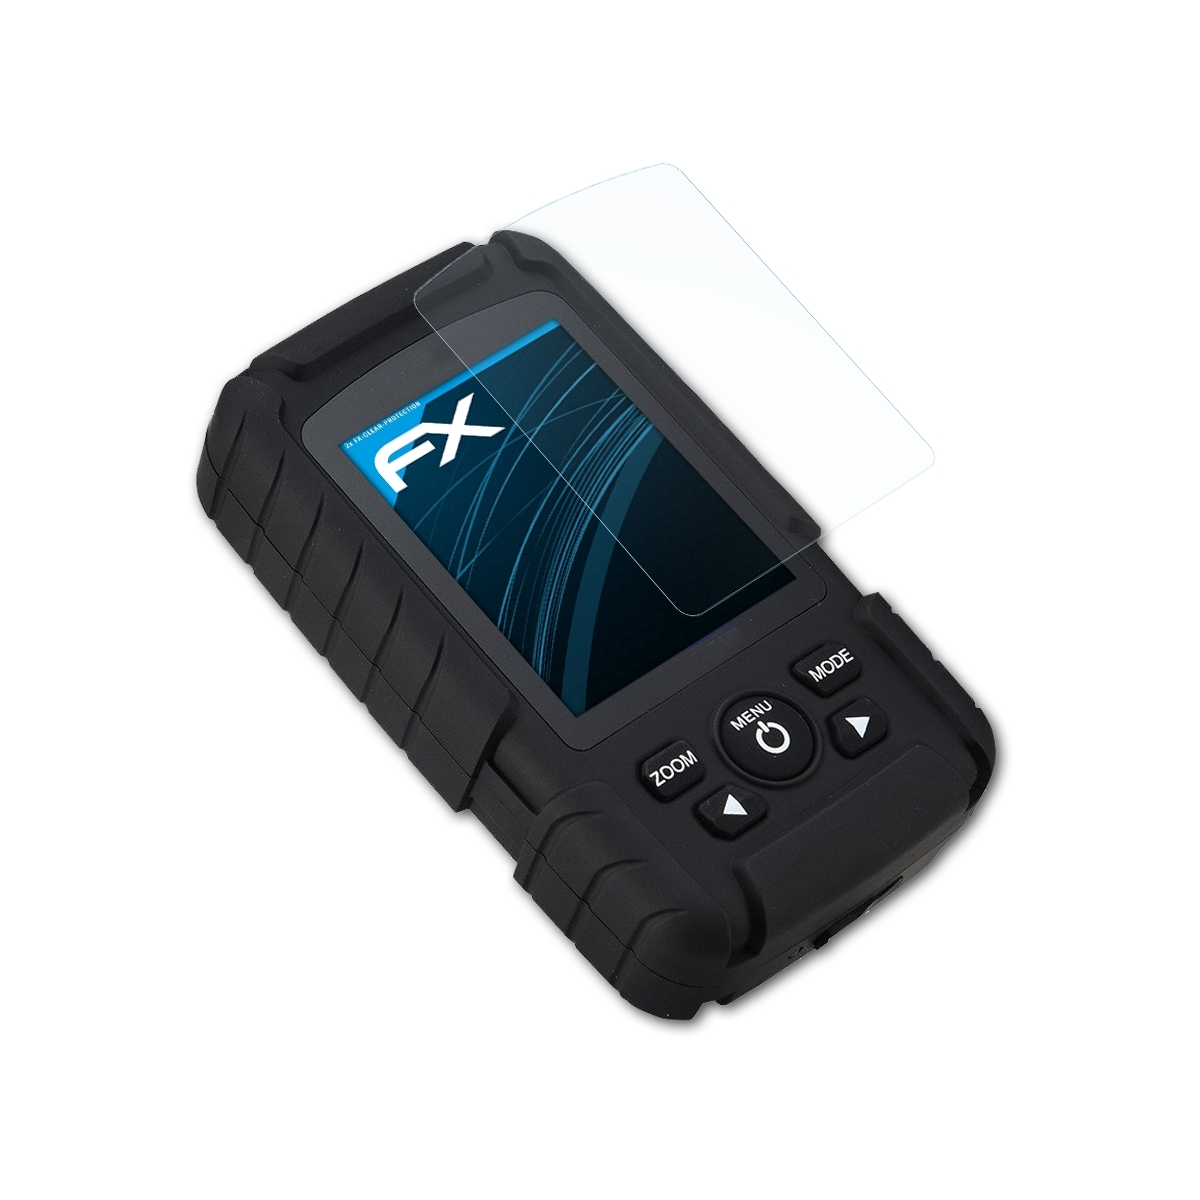 ATFOLIX 2x FX-Clear Displayschutz(für (FF718LiC)) Fishfinder Lucky